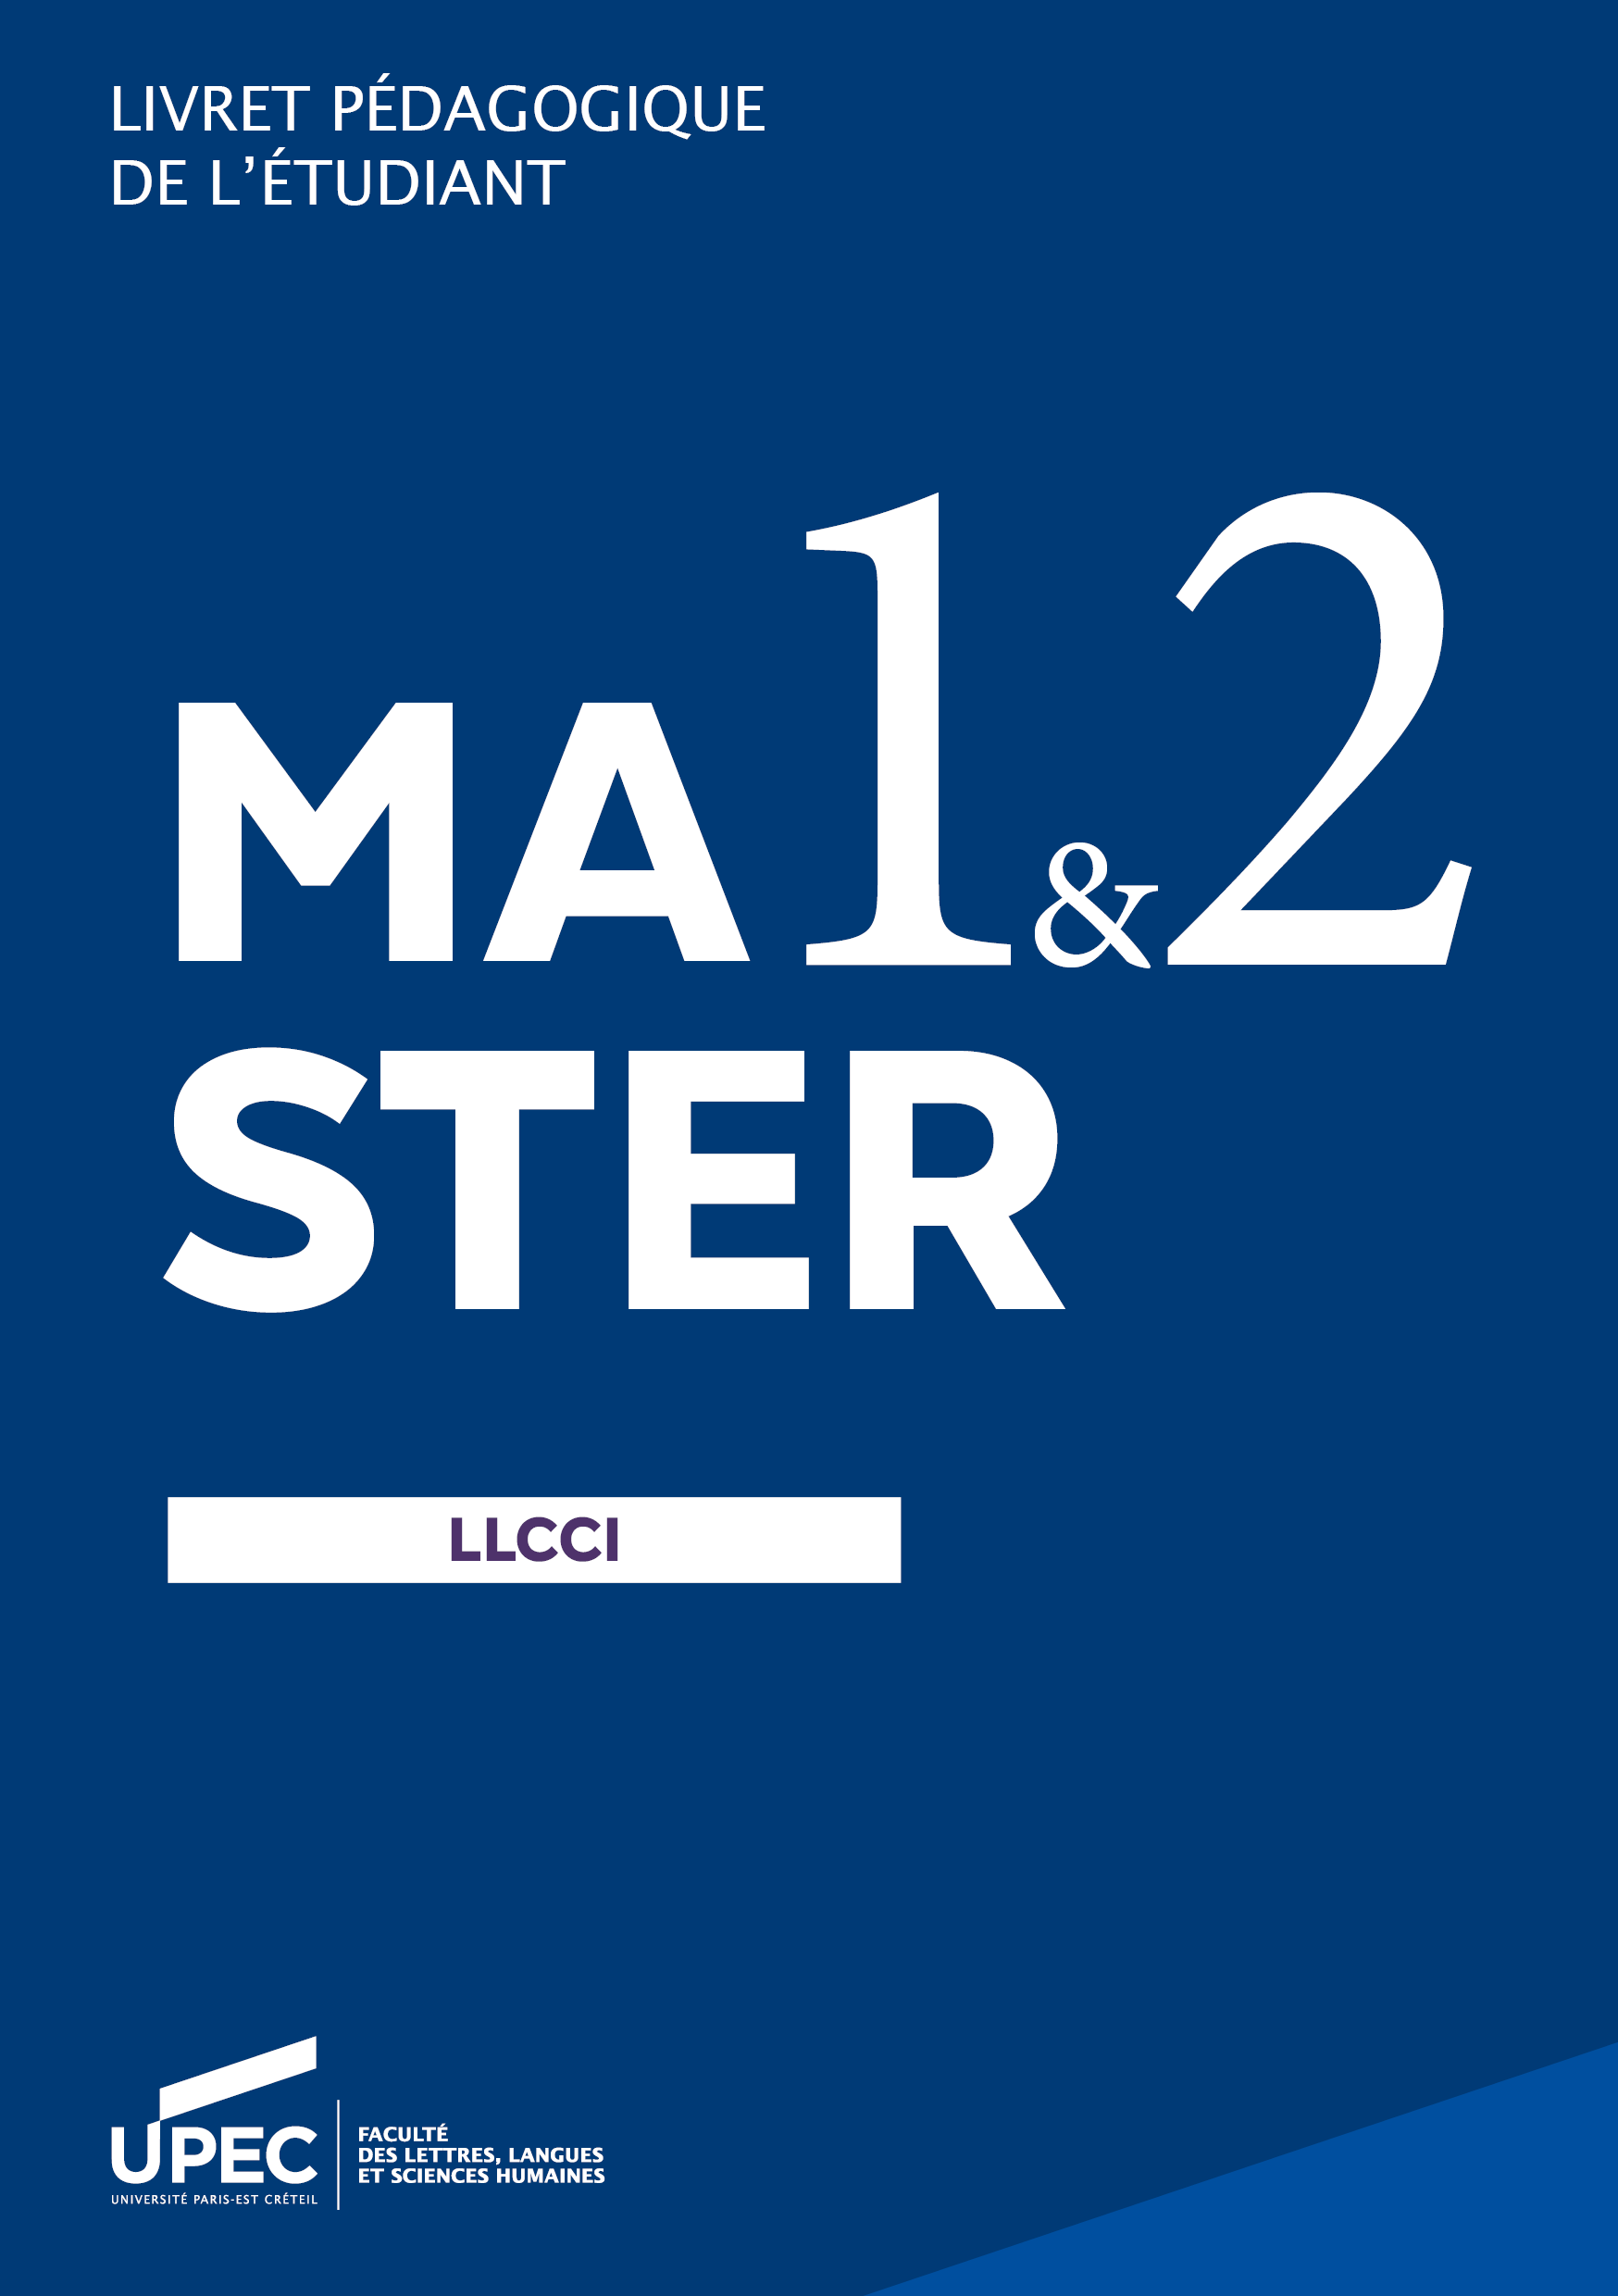 Télécharger le livret Master LLCCI